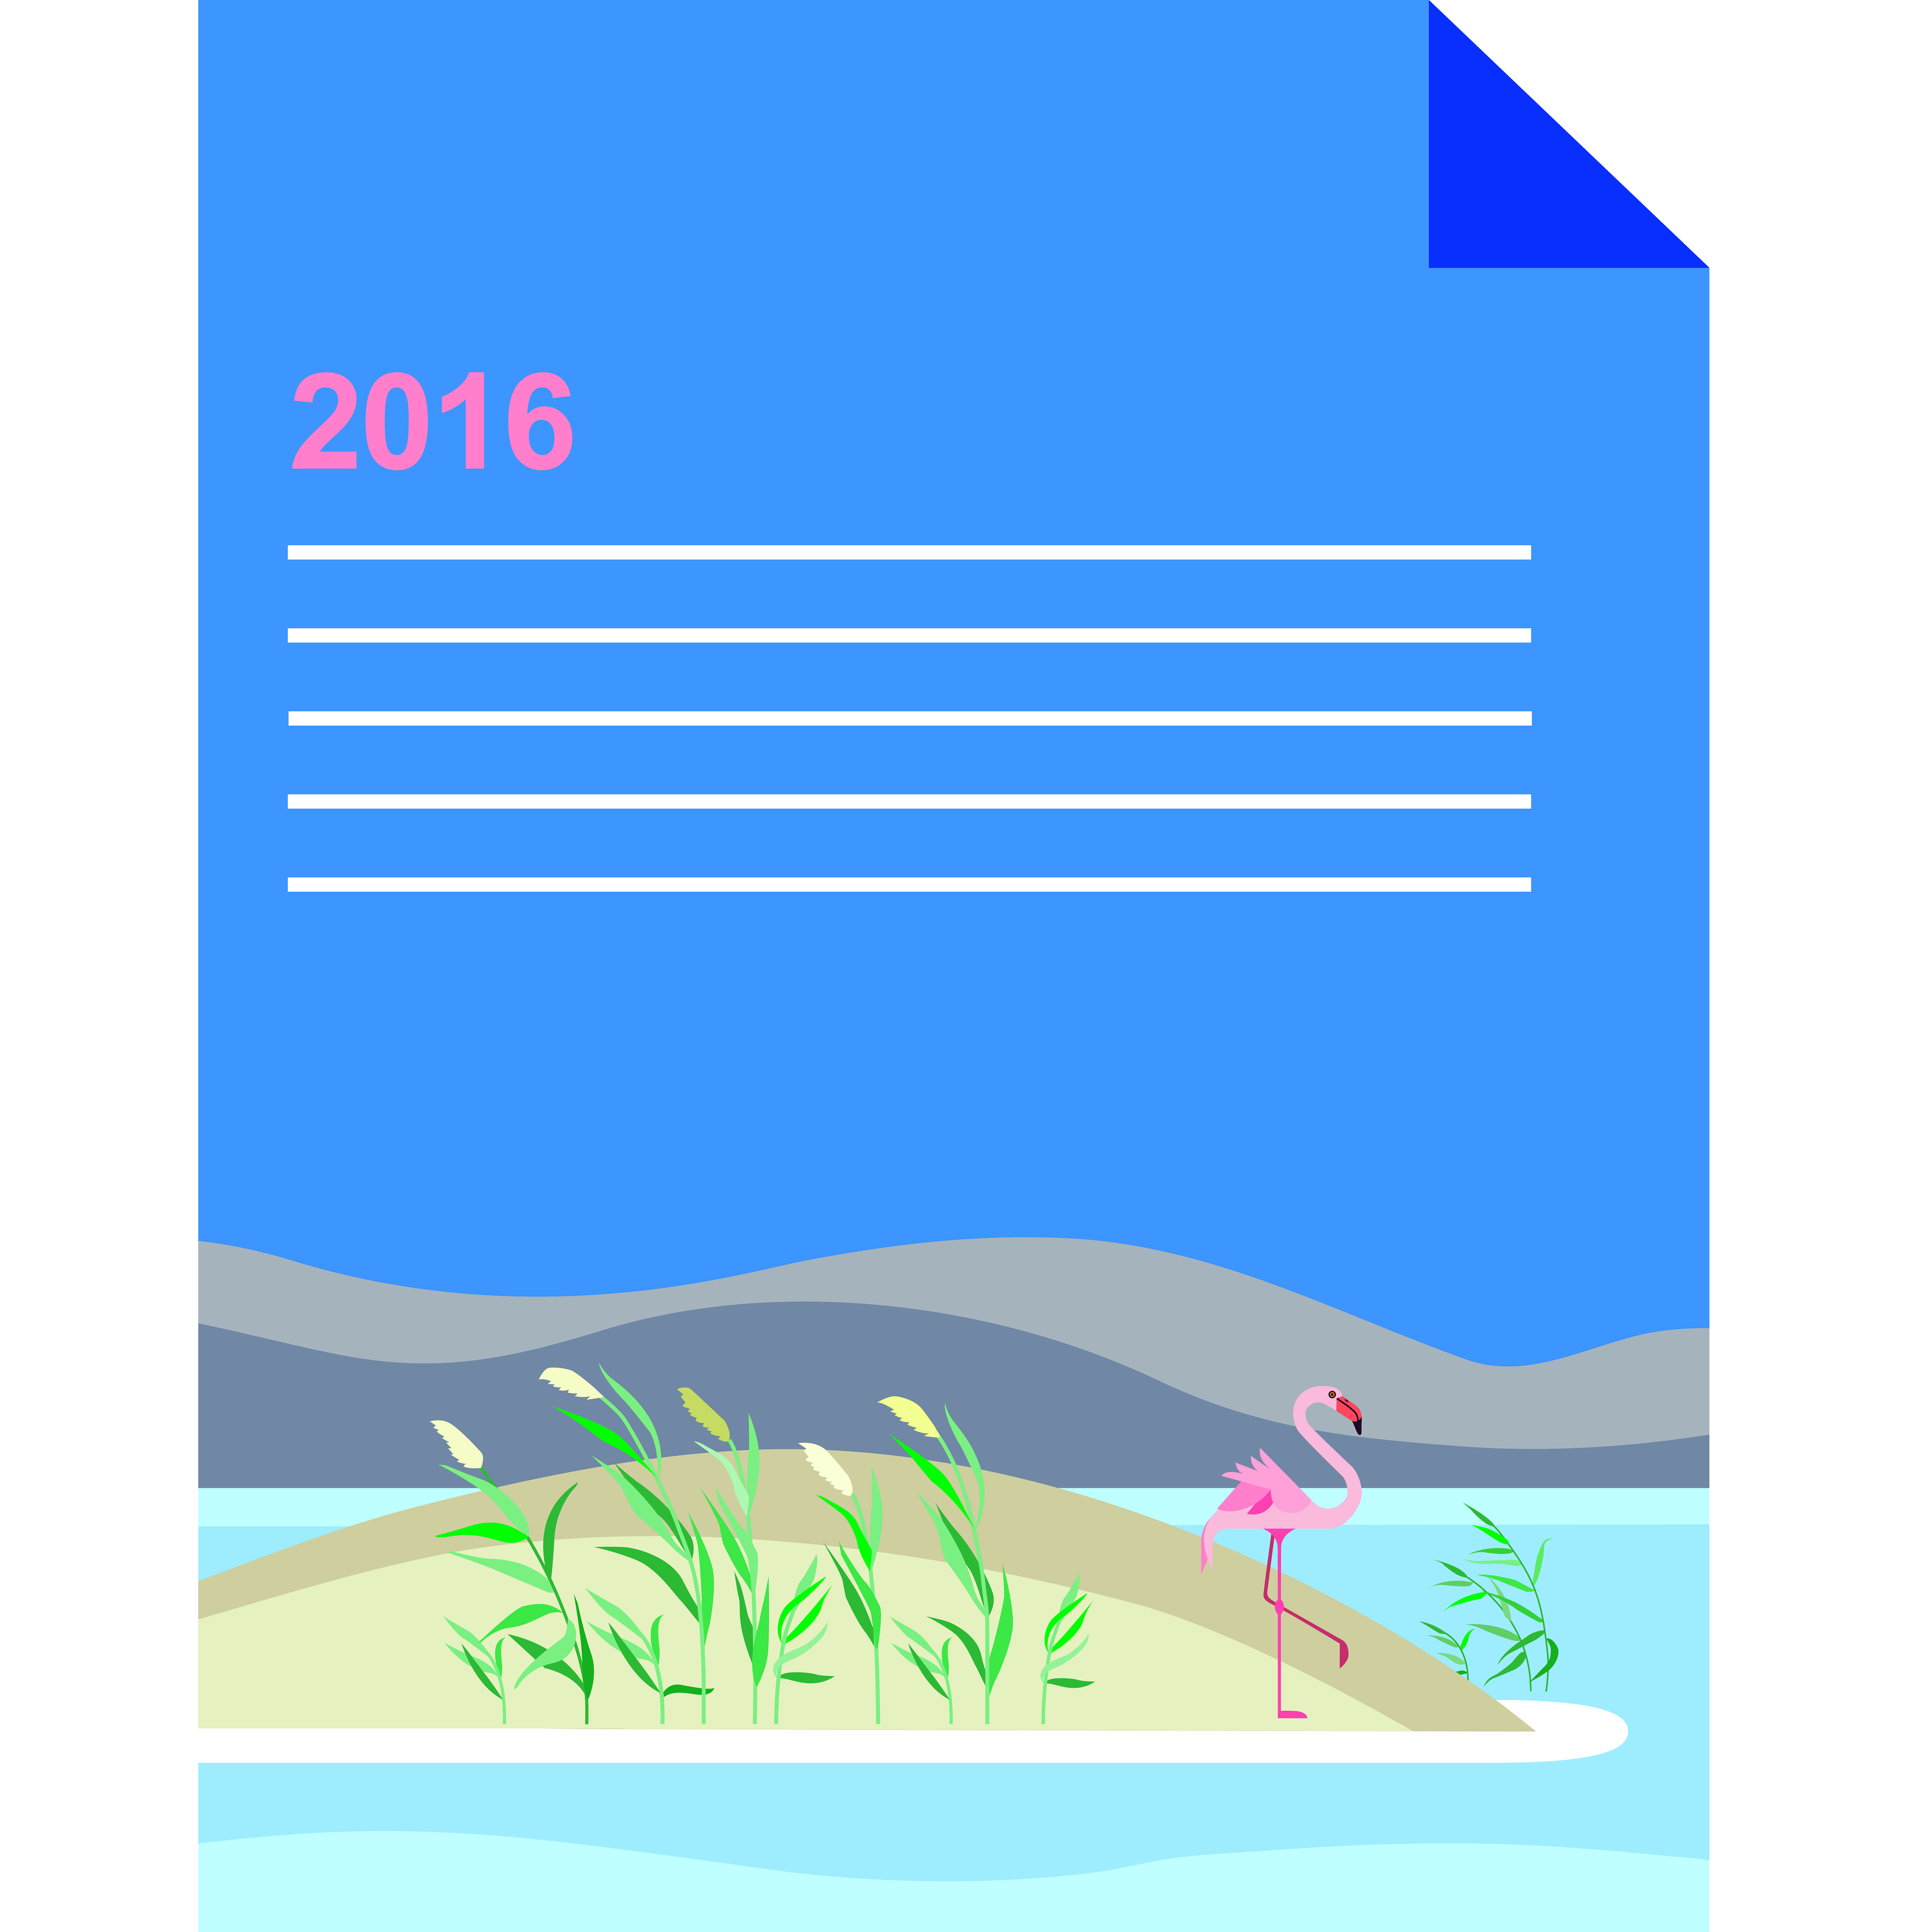 گزارش سالانه طرح در سال 2016